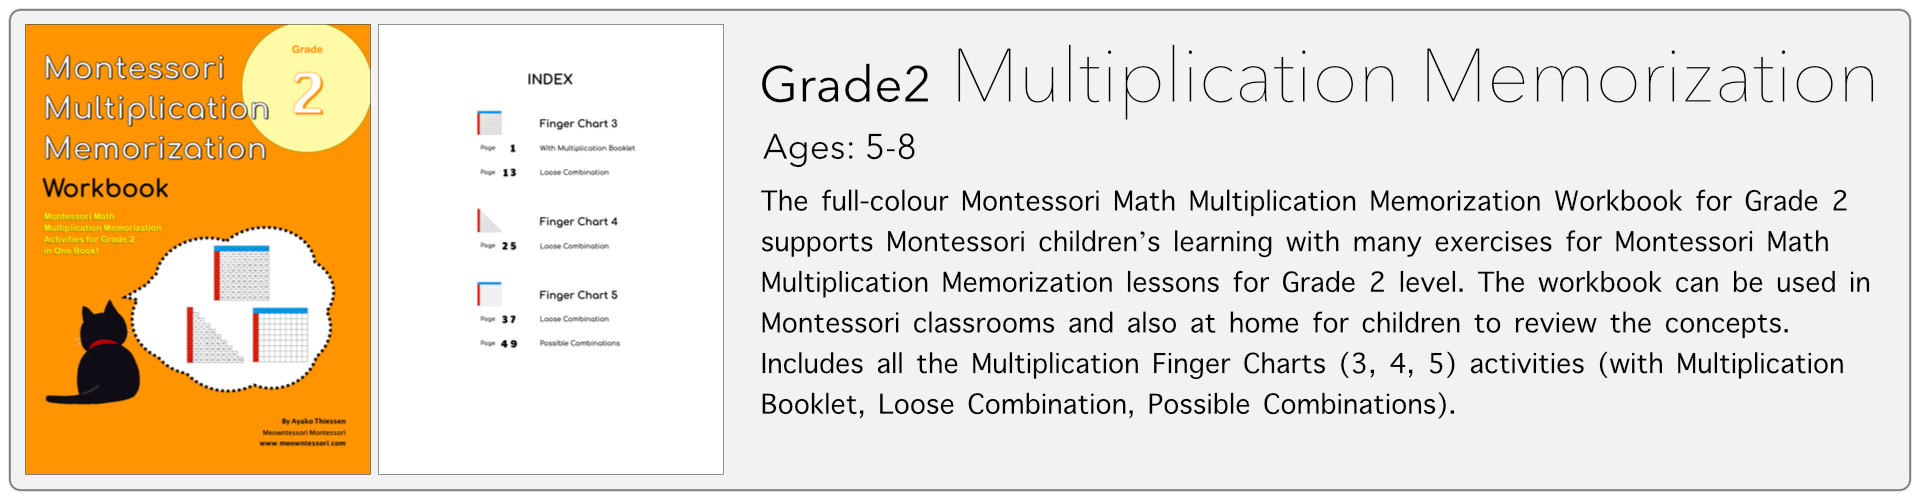 grade2 multiplication memorization